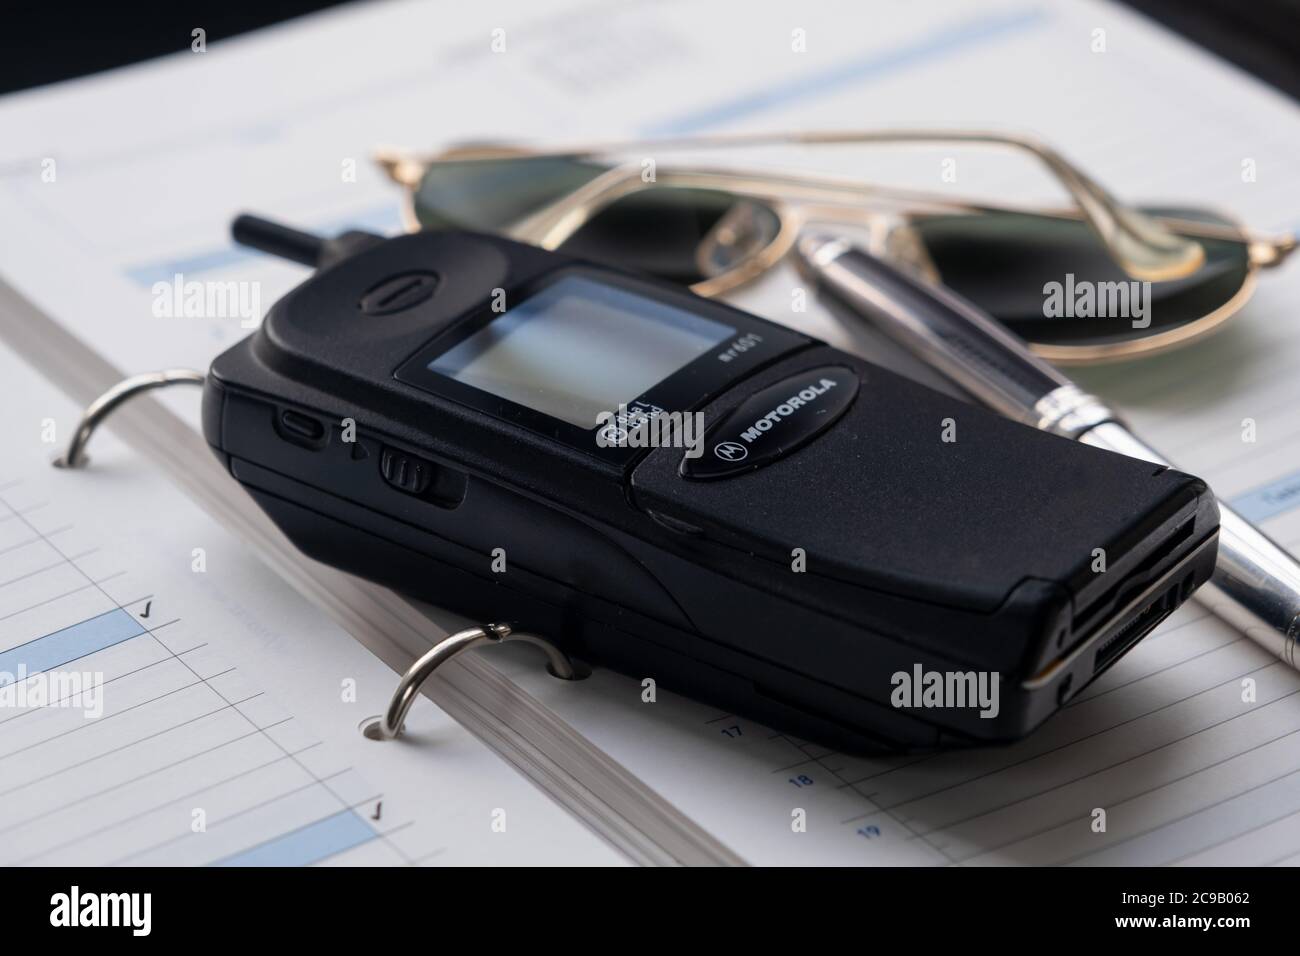 Telefono cellulare degli anni novanta, una penna fontana d'argento e un paio di occhiali da sole seduti sopra un diario di grande formato. Foto Stock